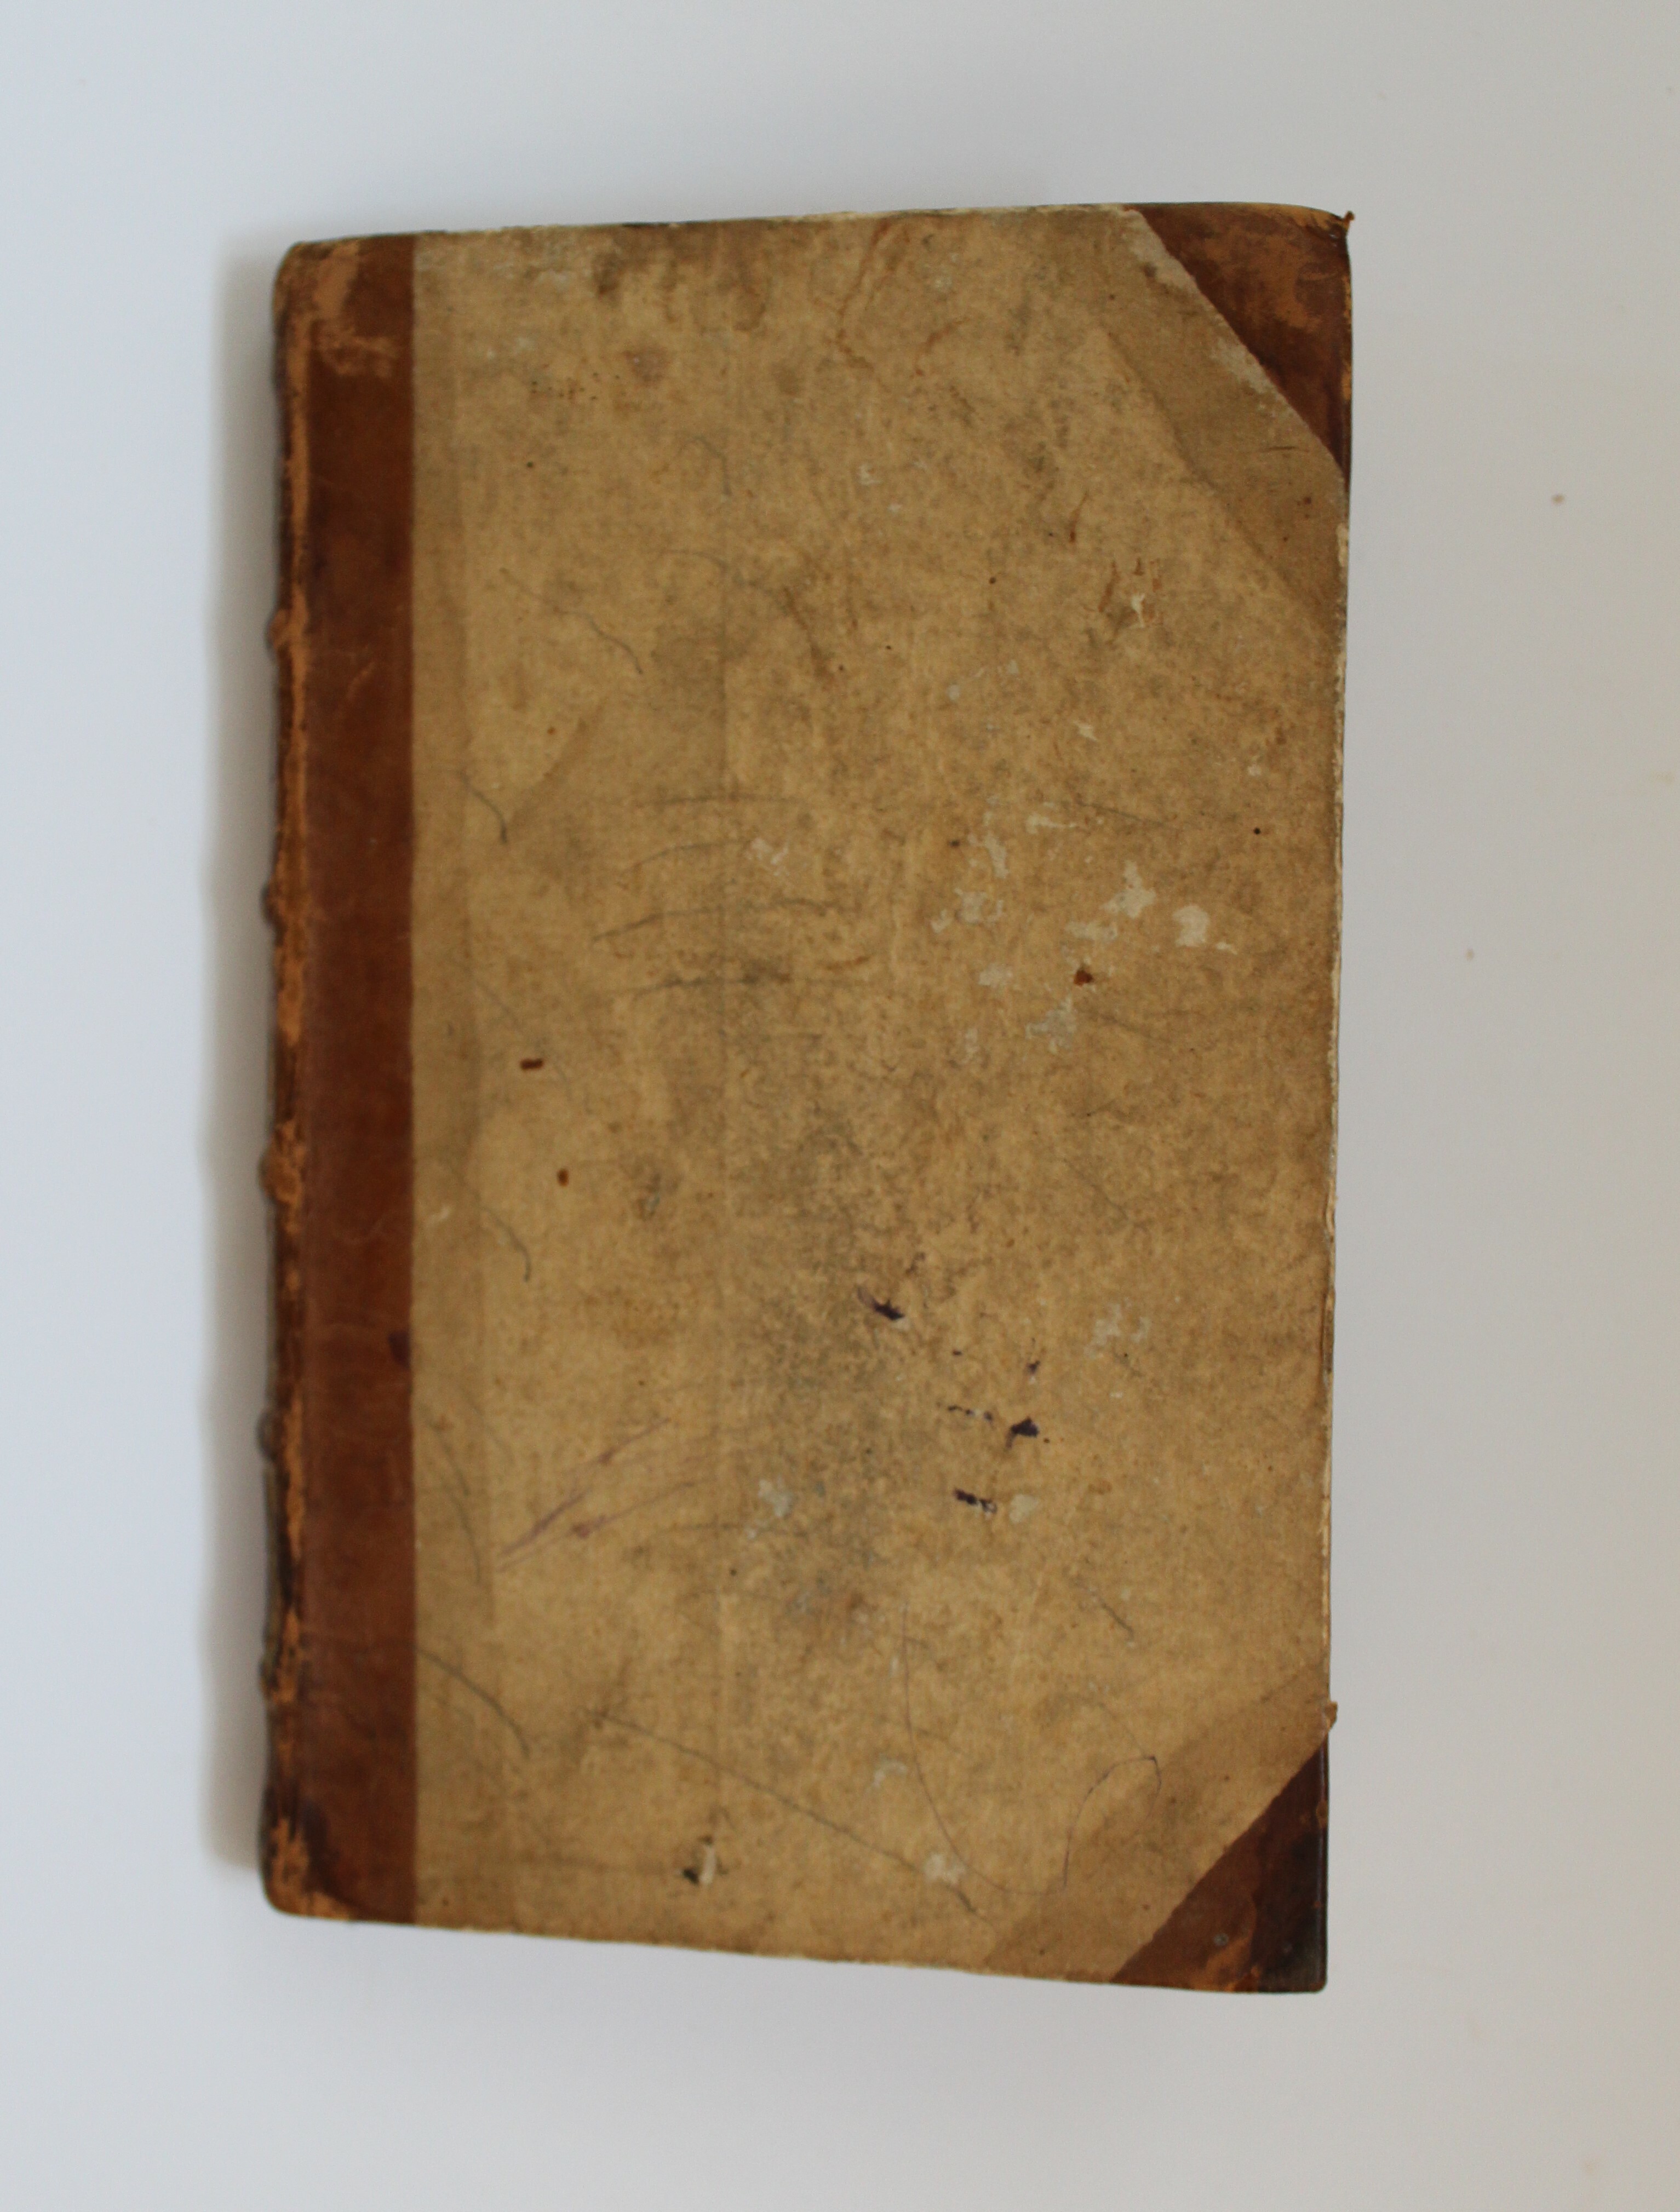 Der Kinderfreund. Ein Lesebuch zum Gebrauch in Landschulen. Friedrich Eberhard von Rochow. 1777 (Reckahner Museen CC BY-NC-SA)